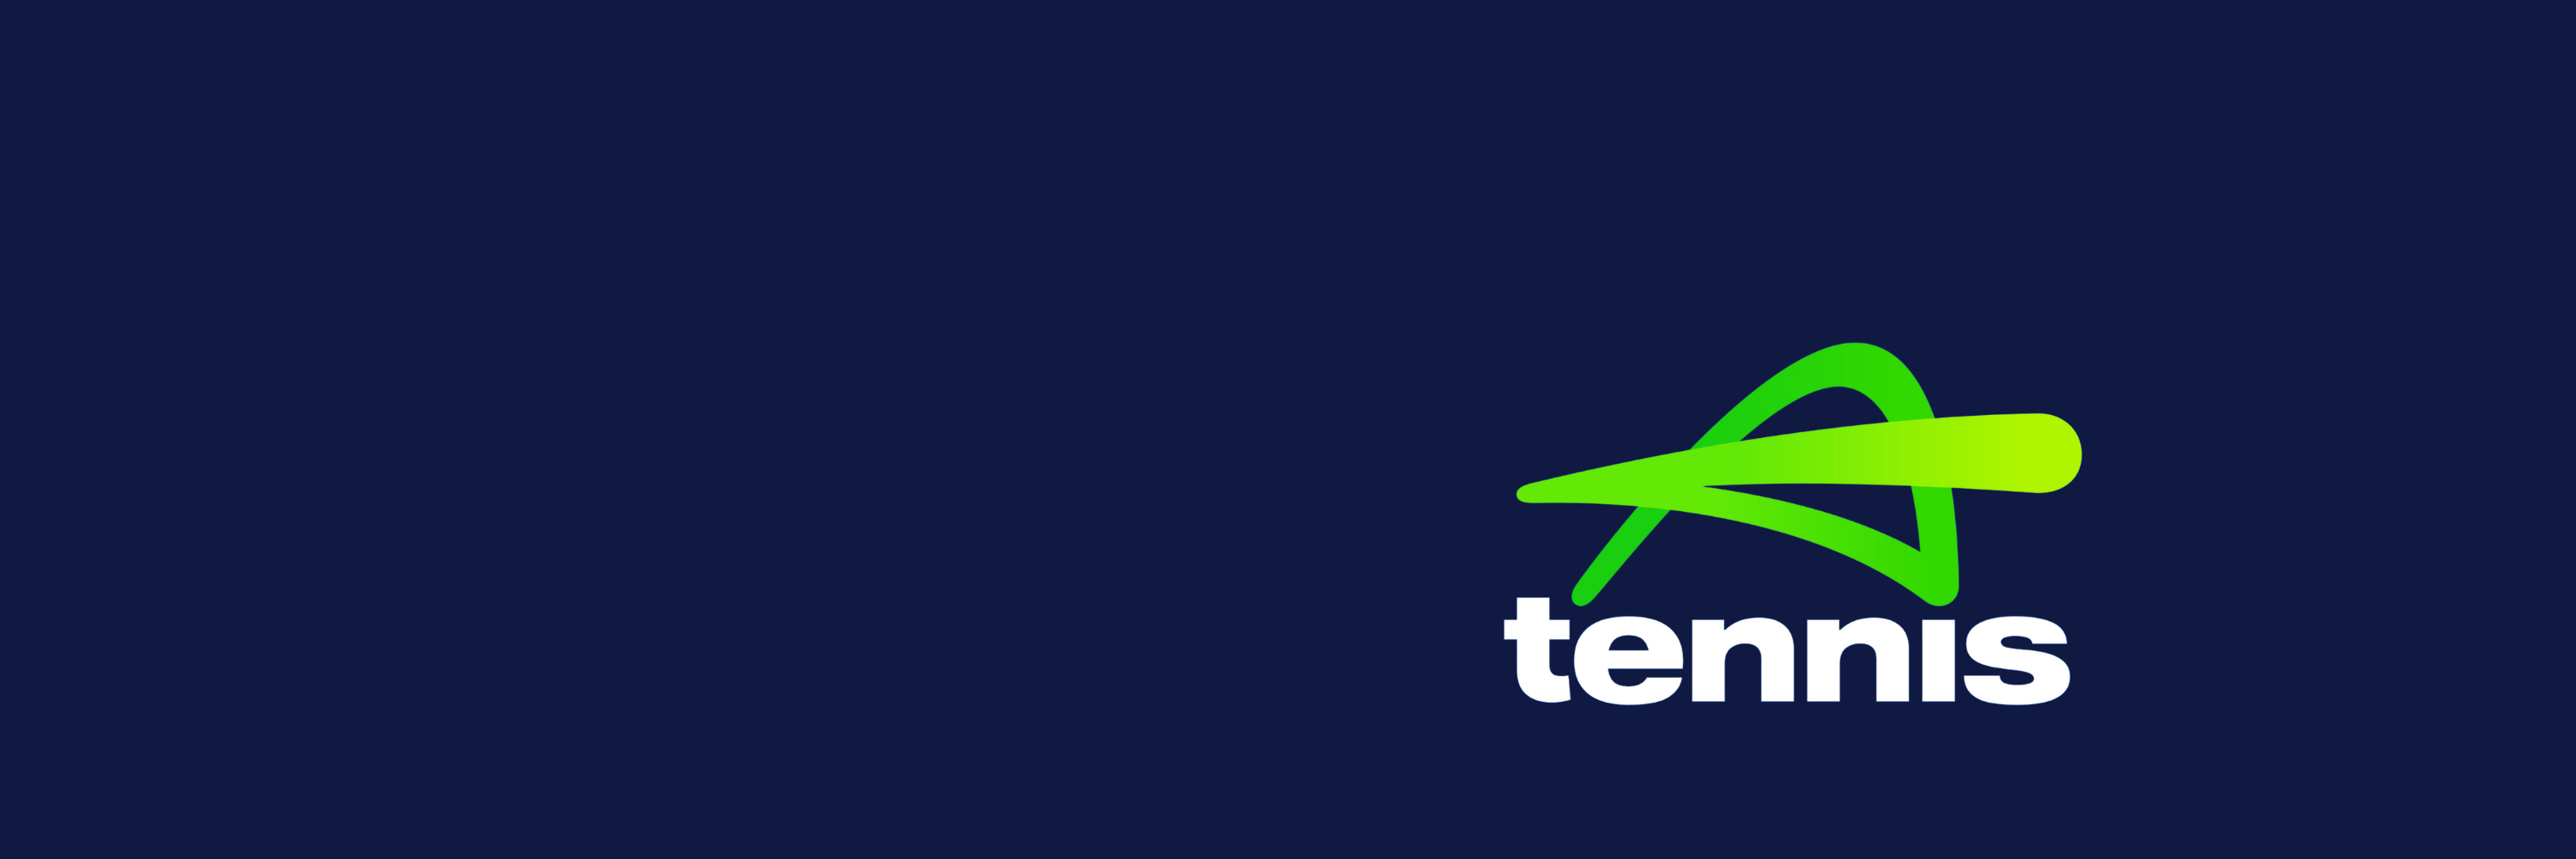 tennis australia logo 